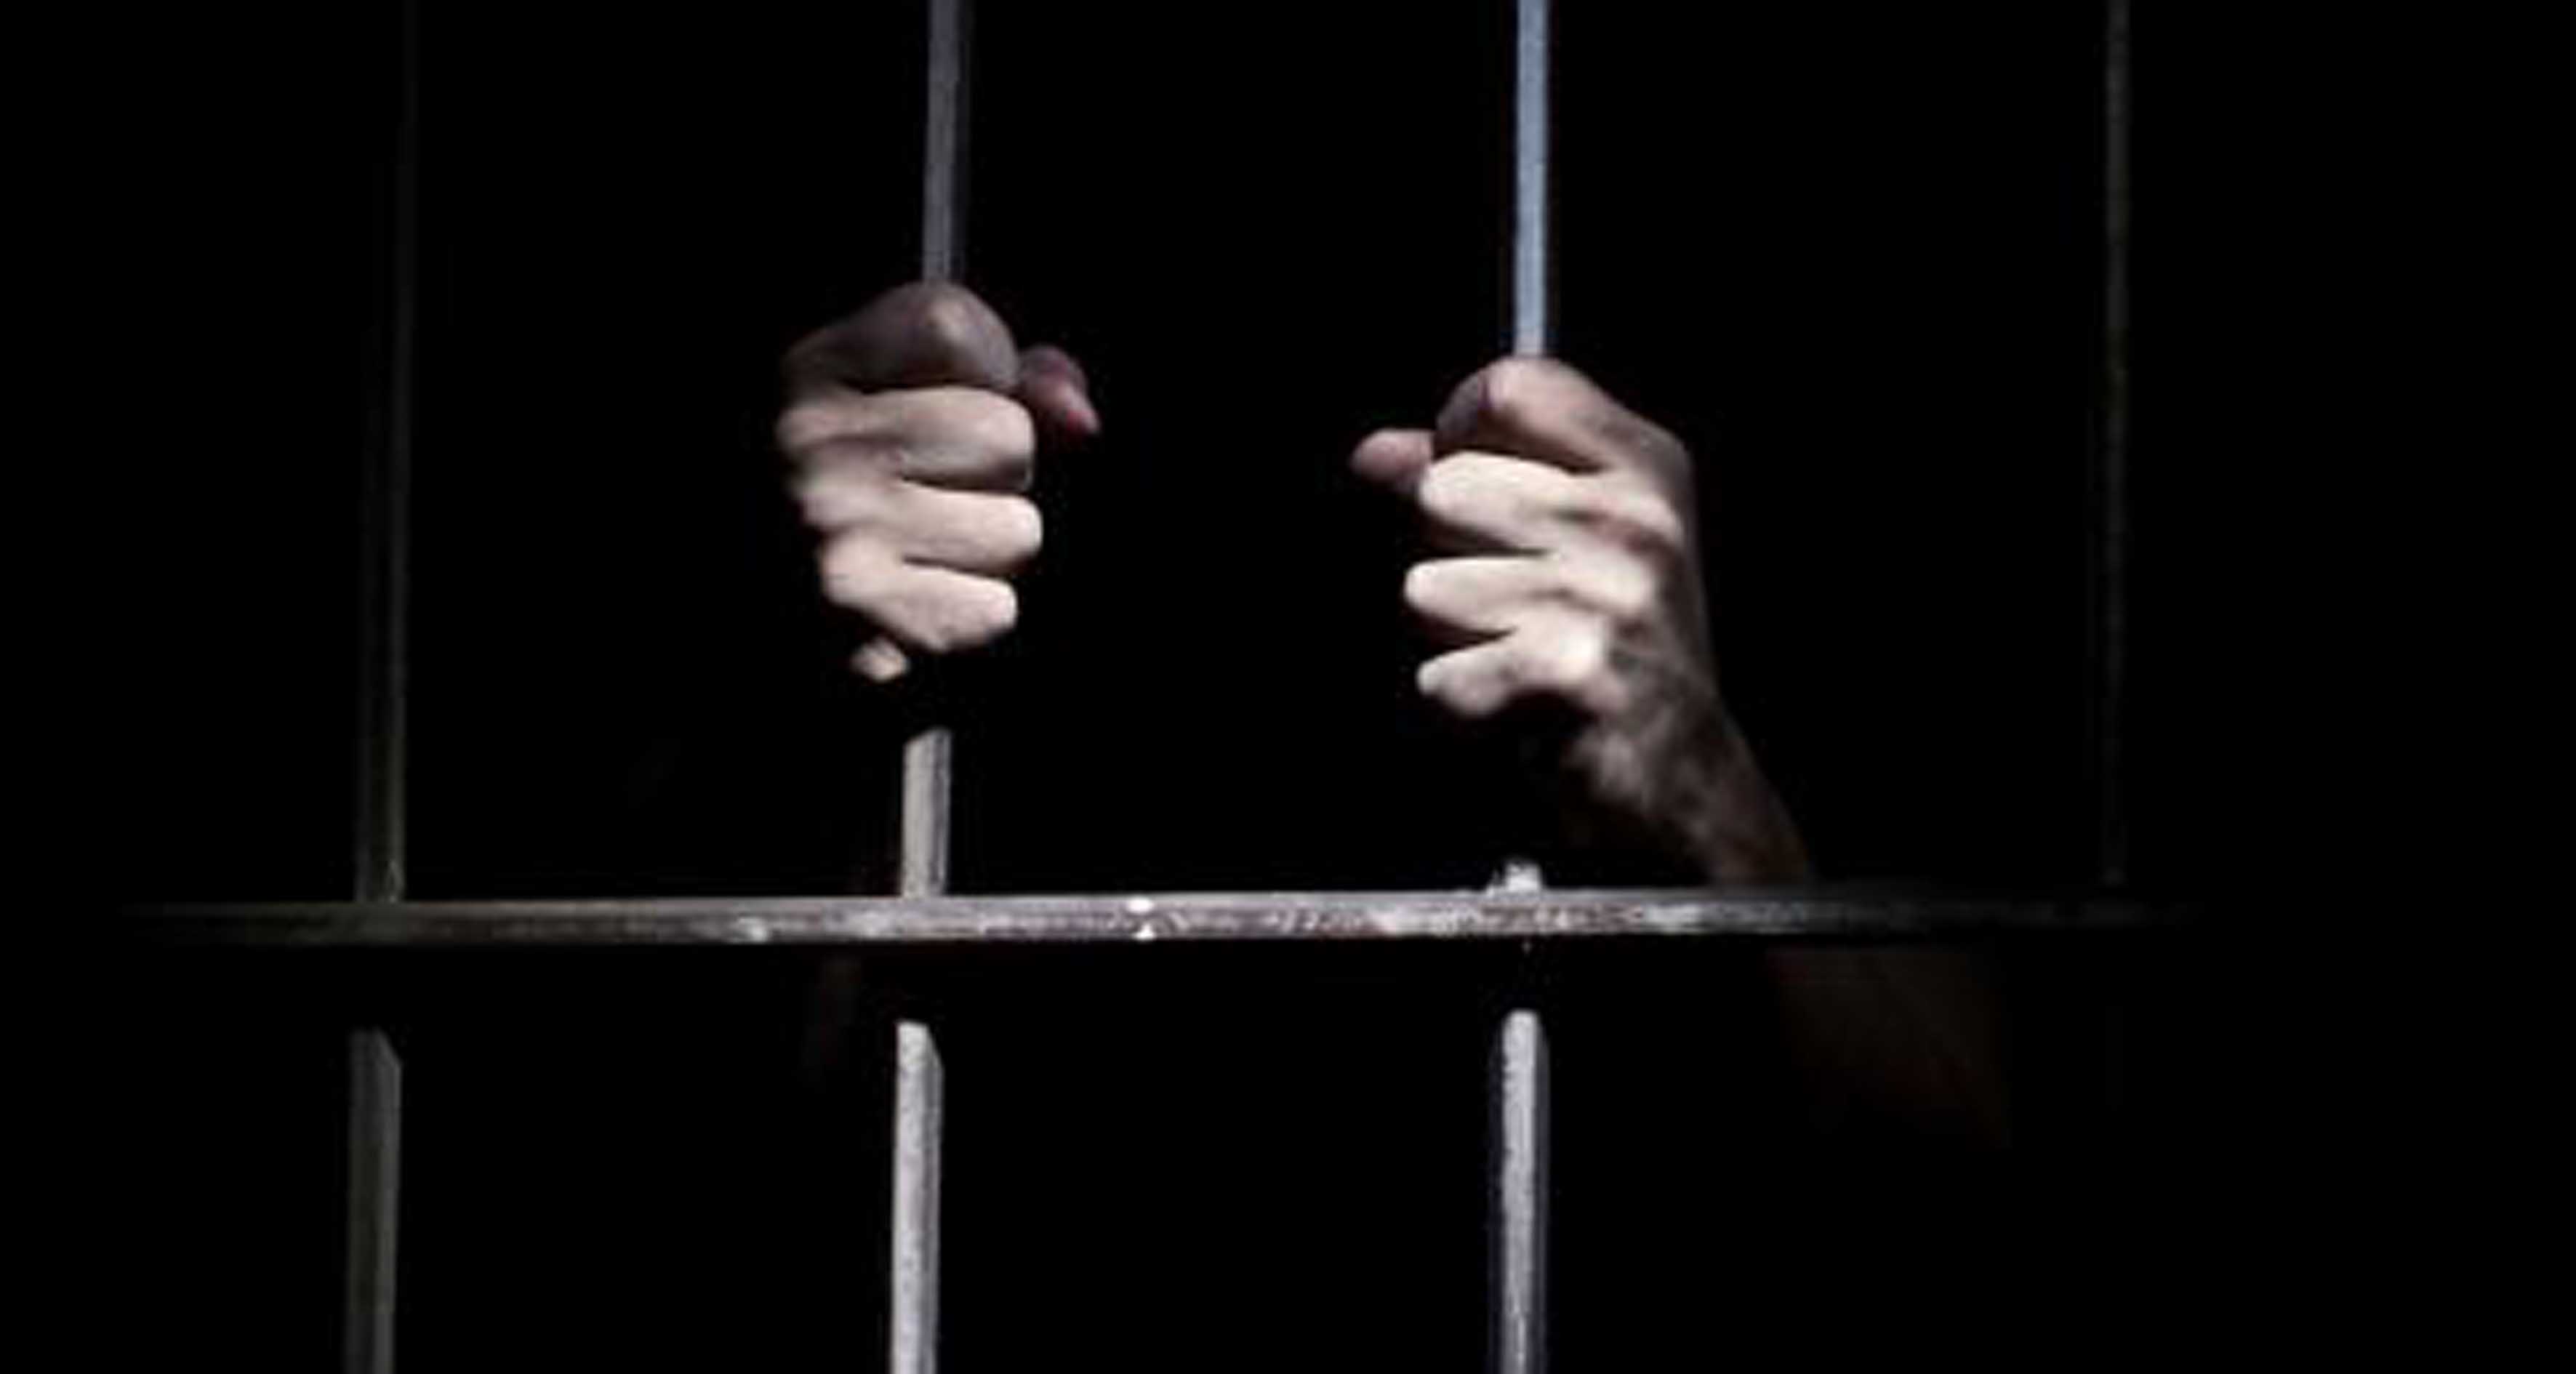 Mantan Cawalkot Padangpanjang Divonis 2,5 Tahun Penjara